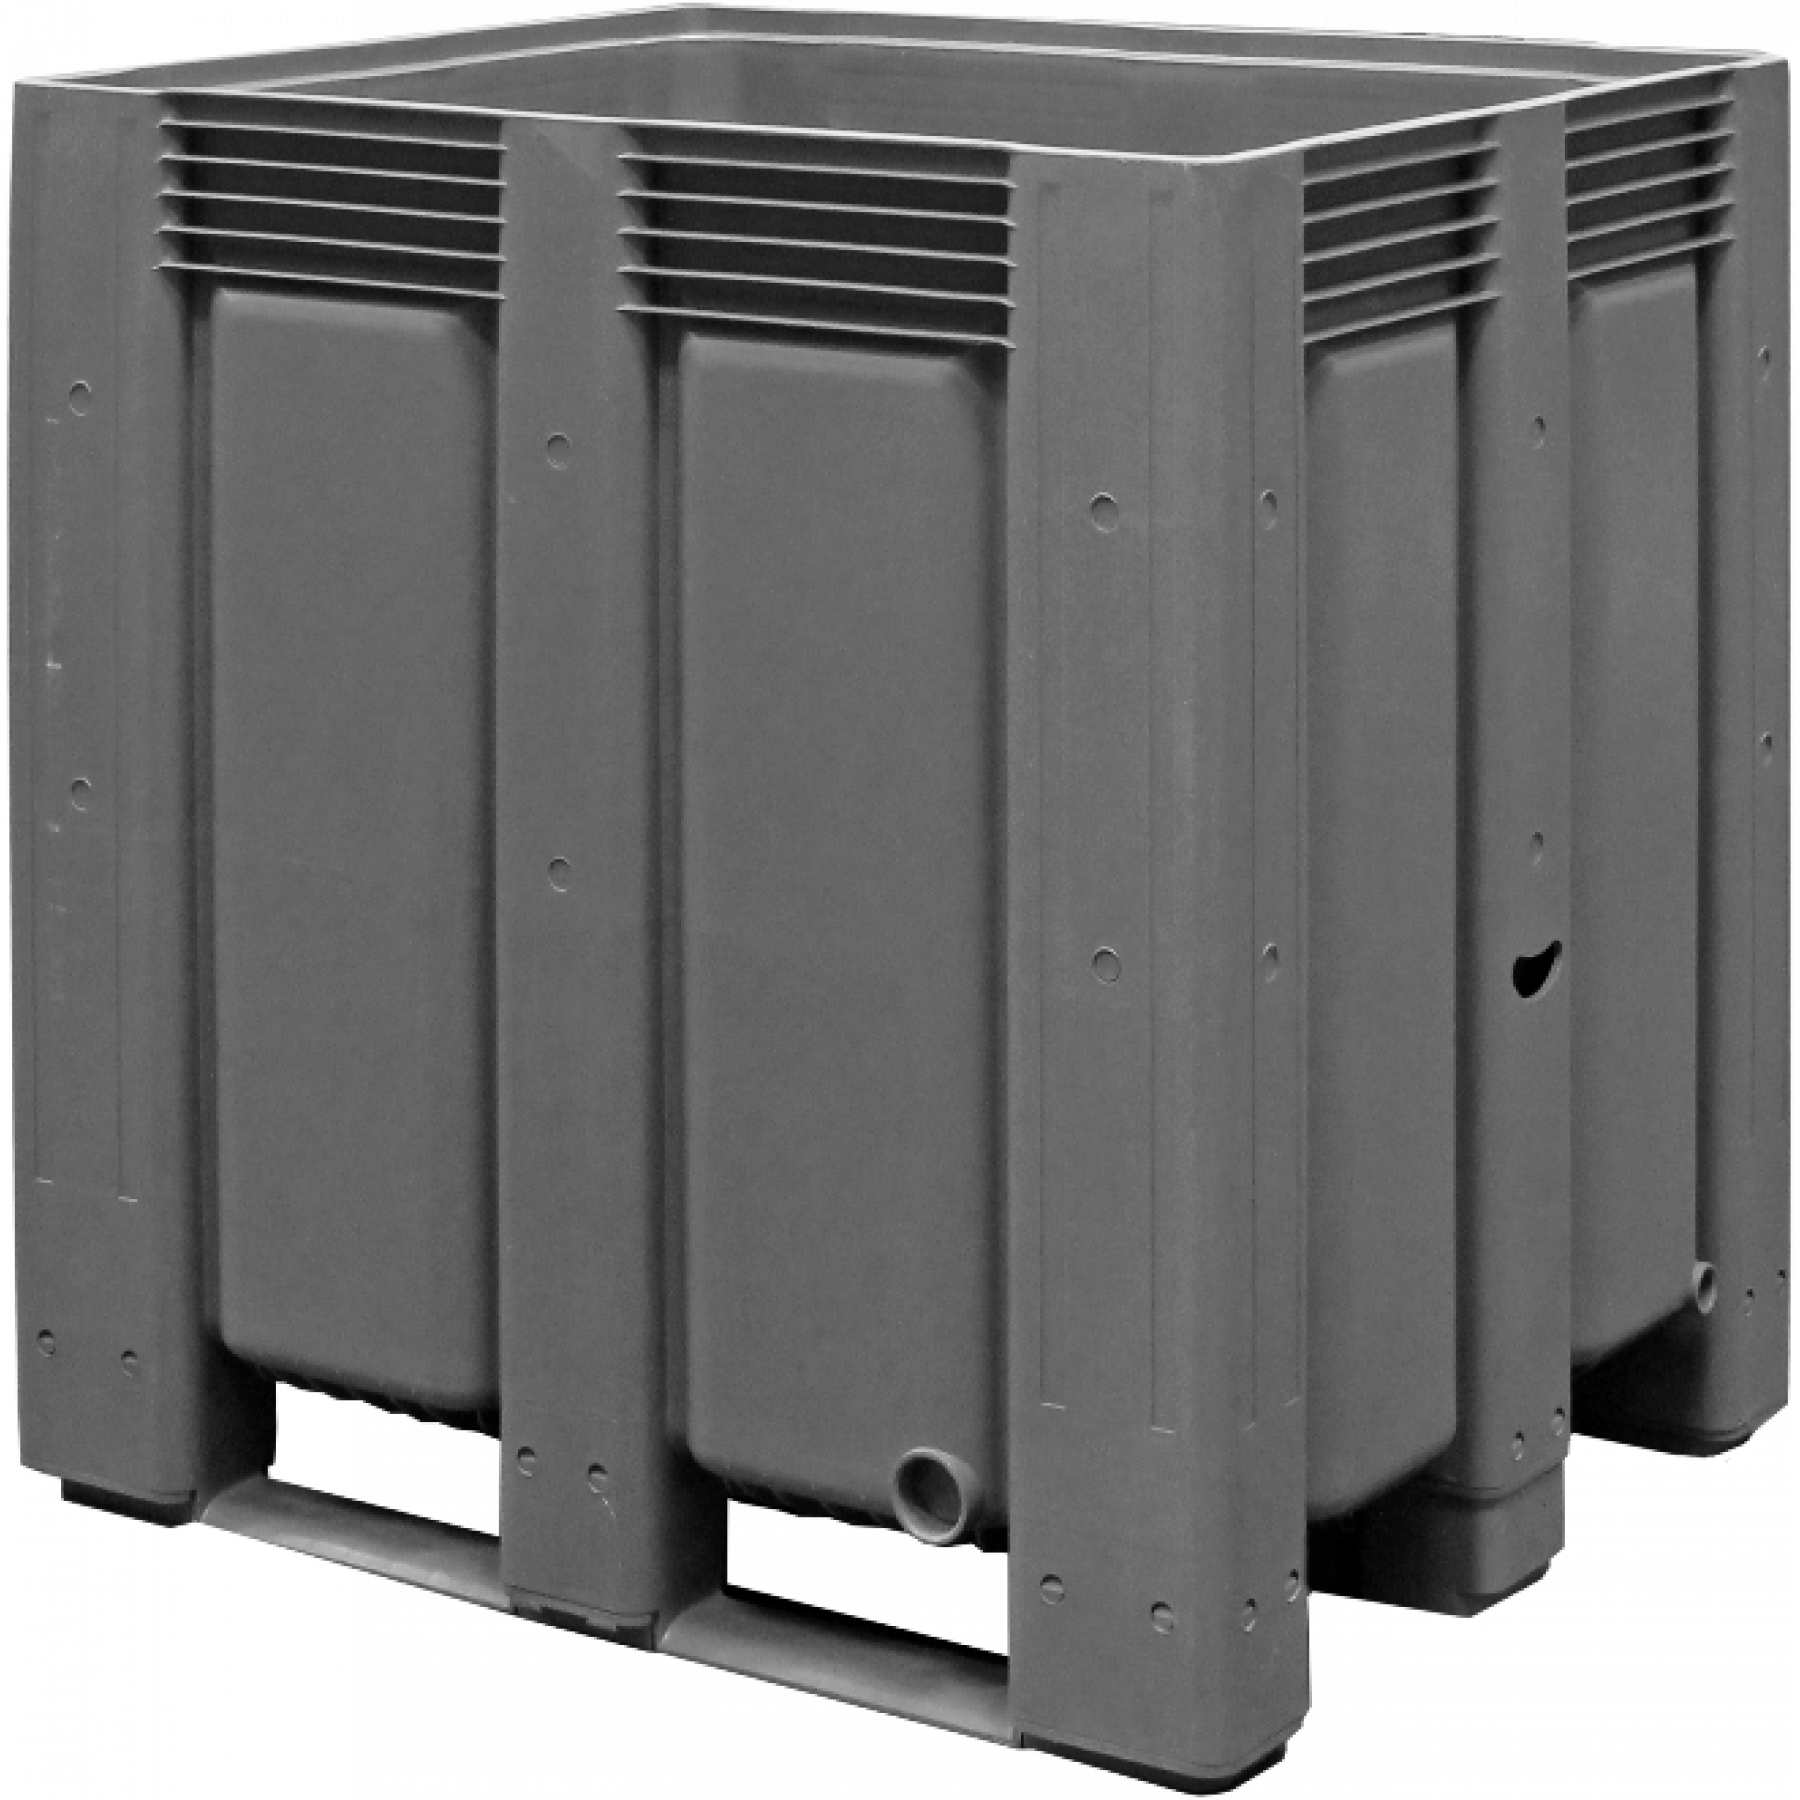 Tretal kunststof palletbox met sleeplatten 1200 x 1000 x 1200 mm, 70092-S58-06-2005-70